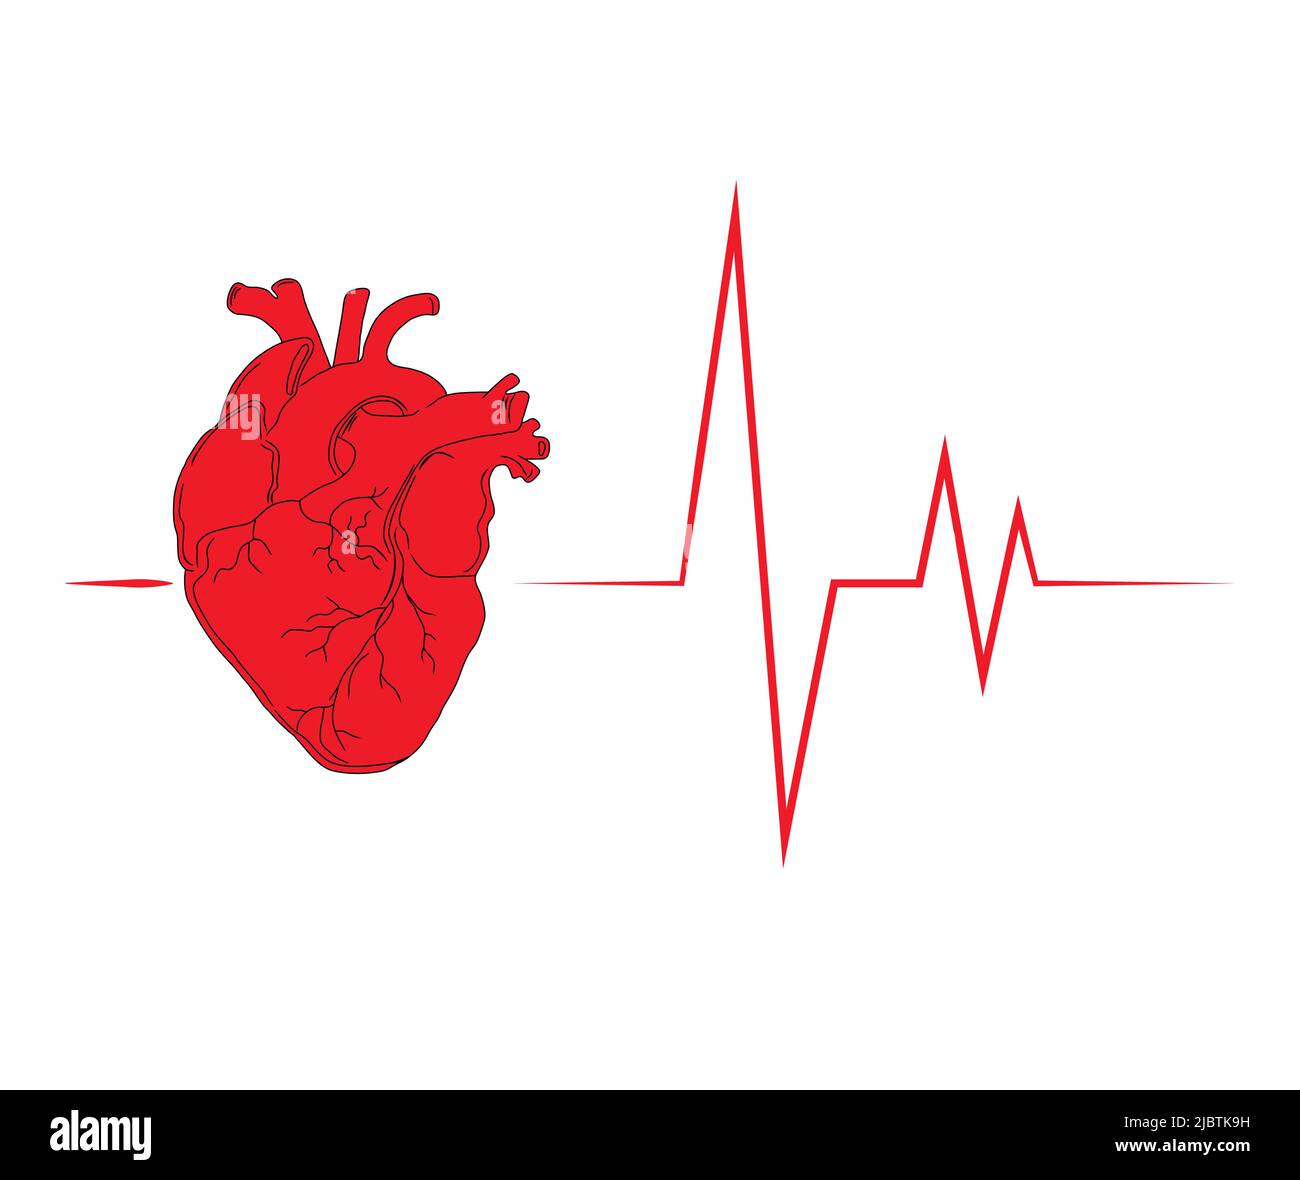 Rotes anatomisches Herz mit einem Kardiogramm. Herzsymbol für medizinische Einrichtungen. Abstrakter Hintergrund, der ein gesundes Herz, Leben, Herzmedizin darstellt. Stock Vektor